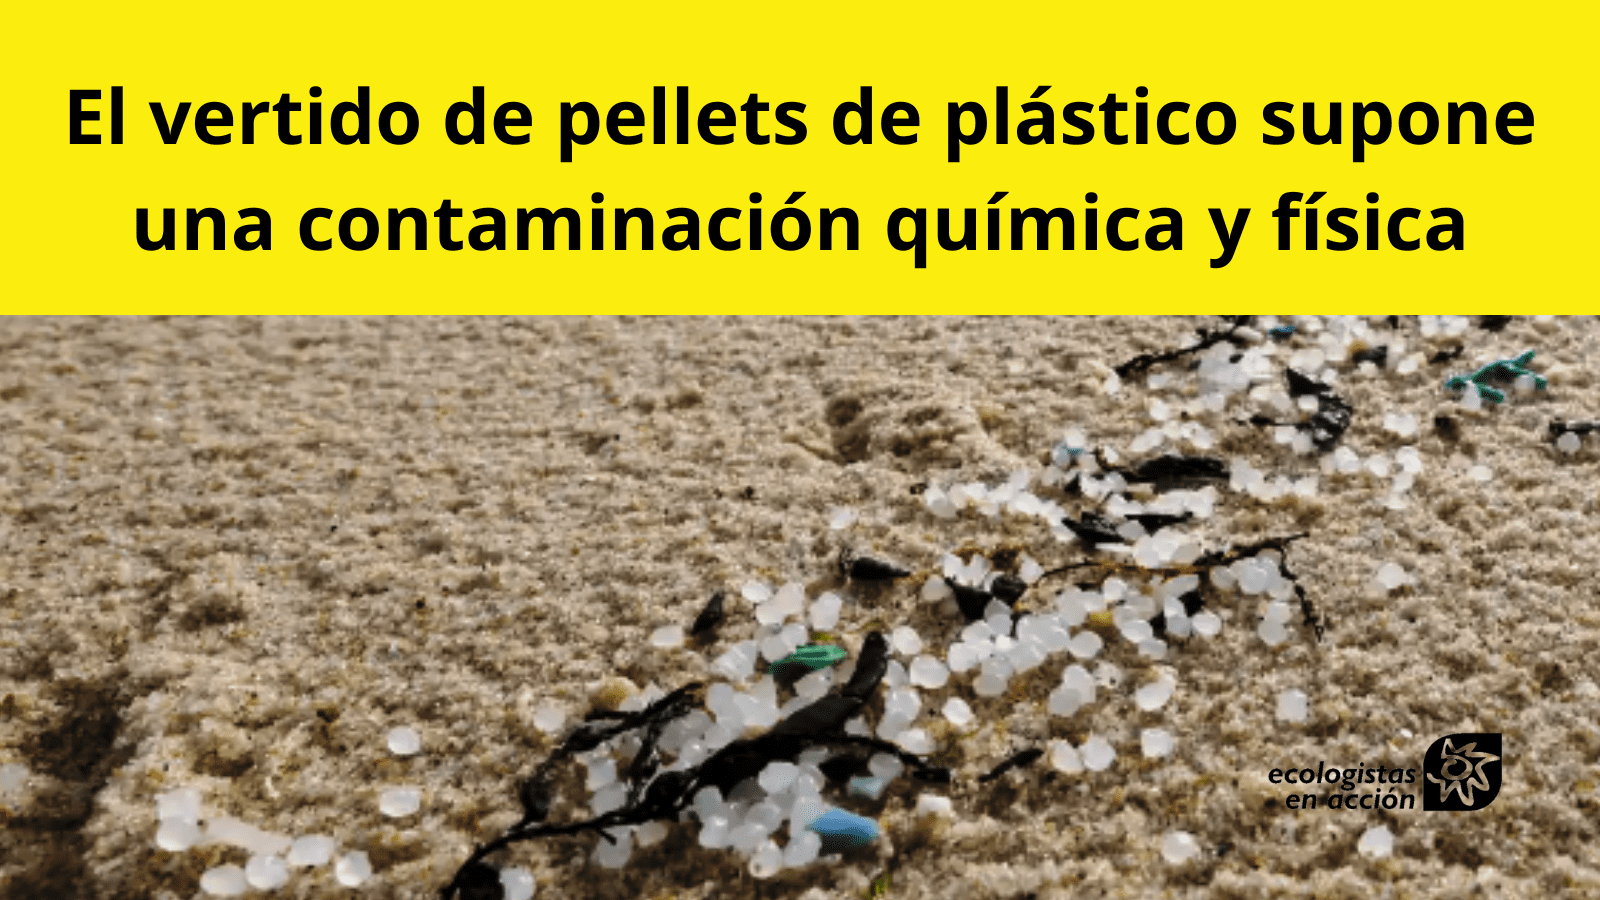 El vertido de pellets de plástico en las costas del norte de la península supone una grave contaminación